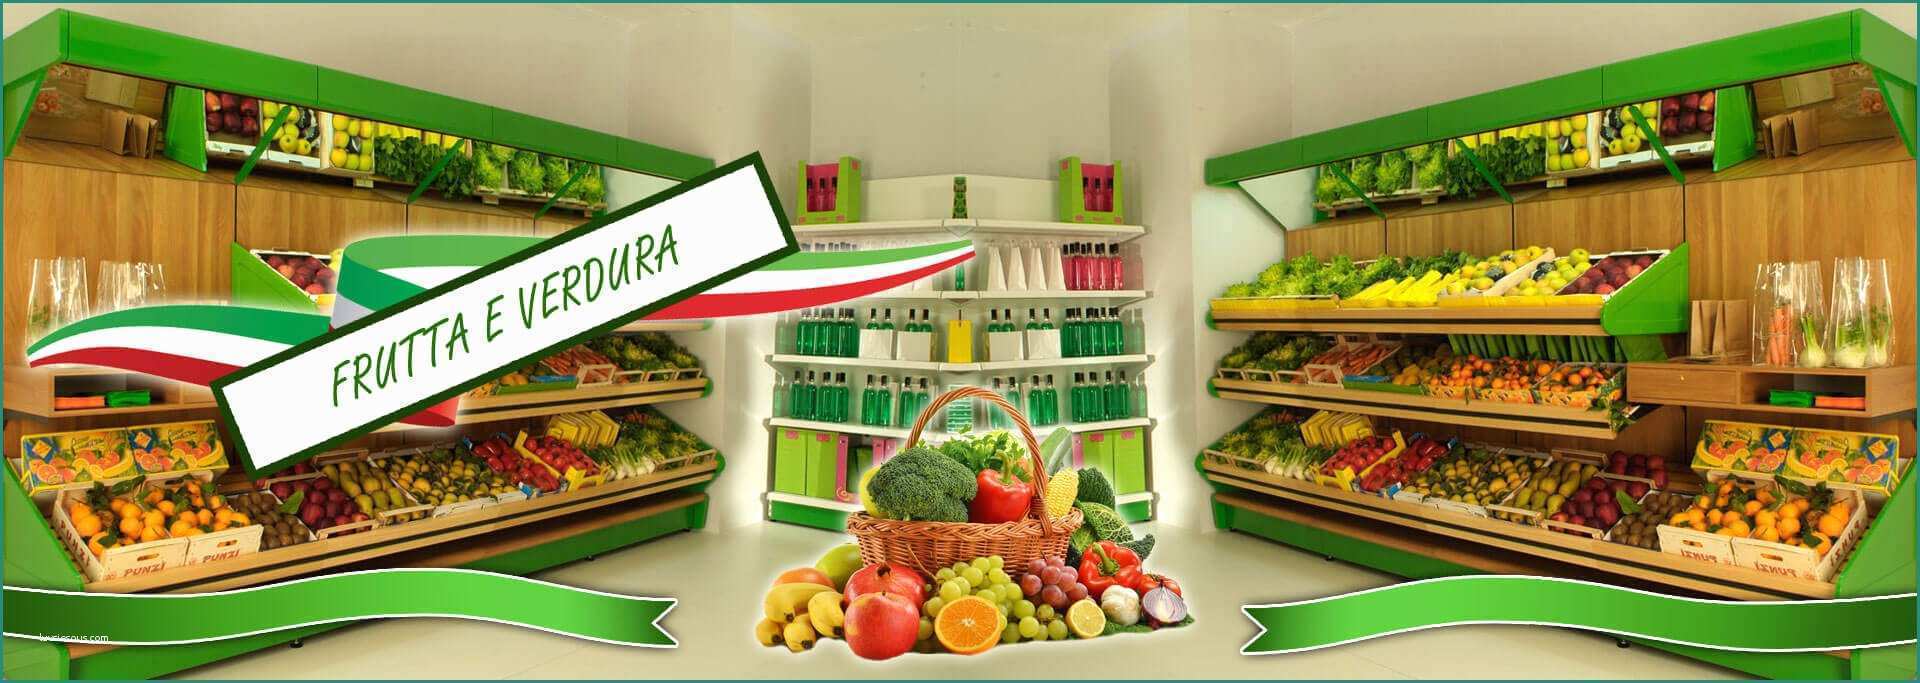 Arredamento Frutta E Verdura E Arredamenti Per Negozi Di Frutta E Verdura Alimentari In